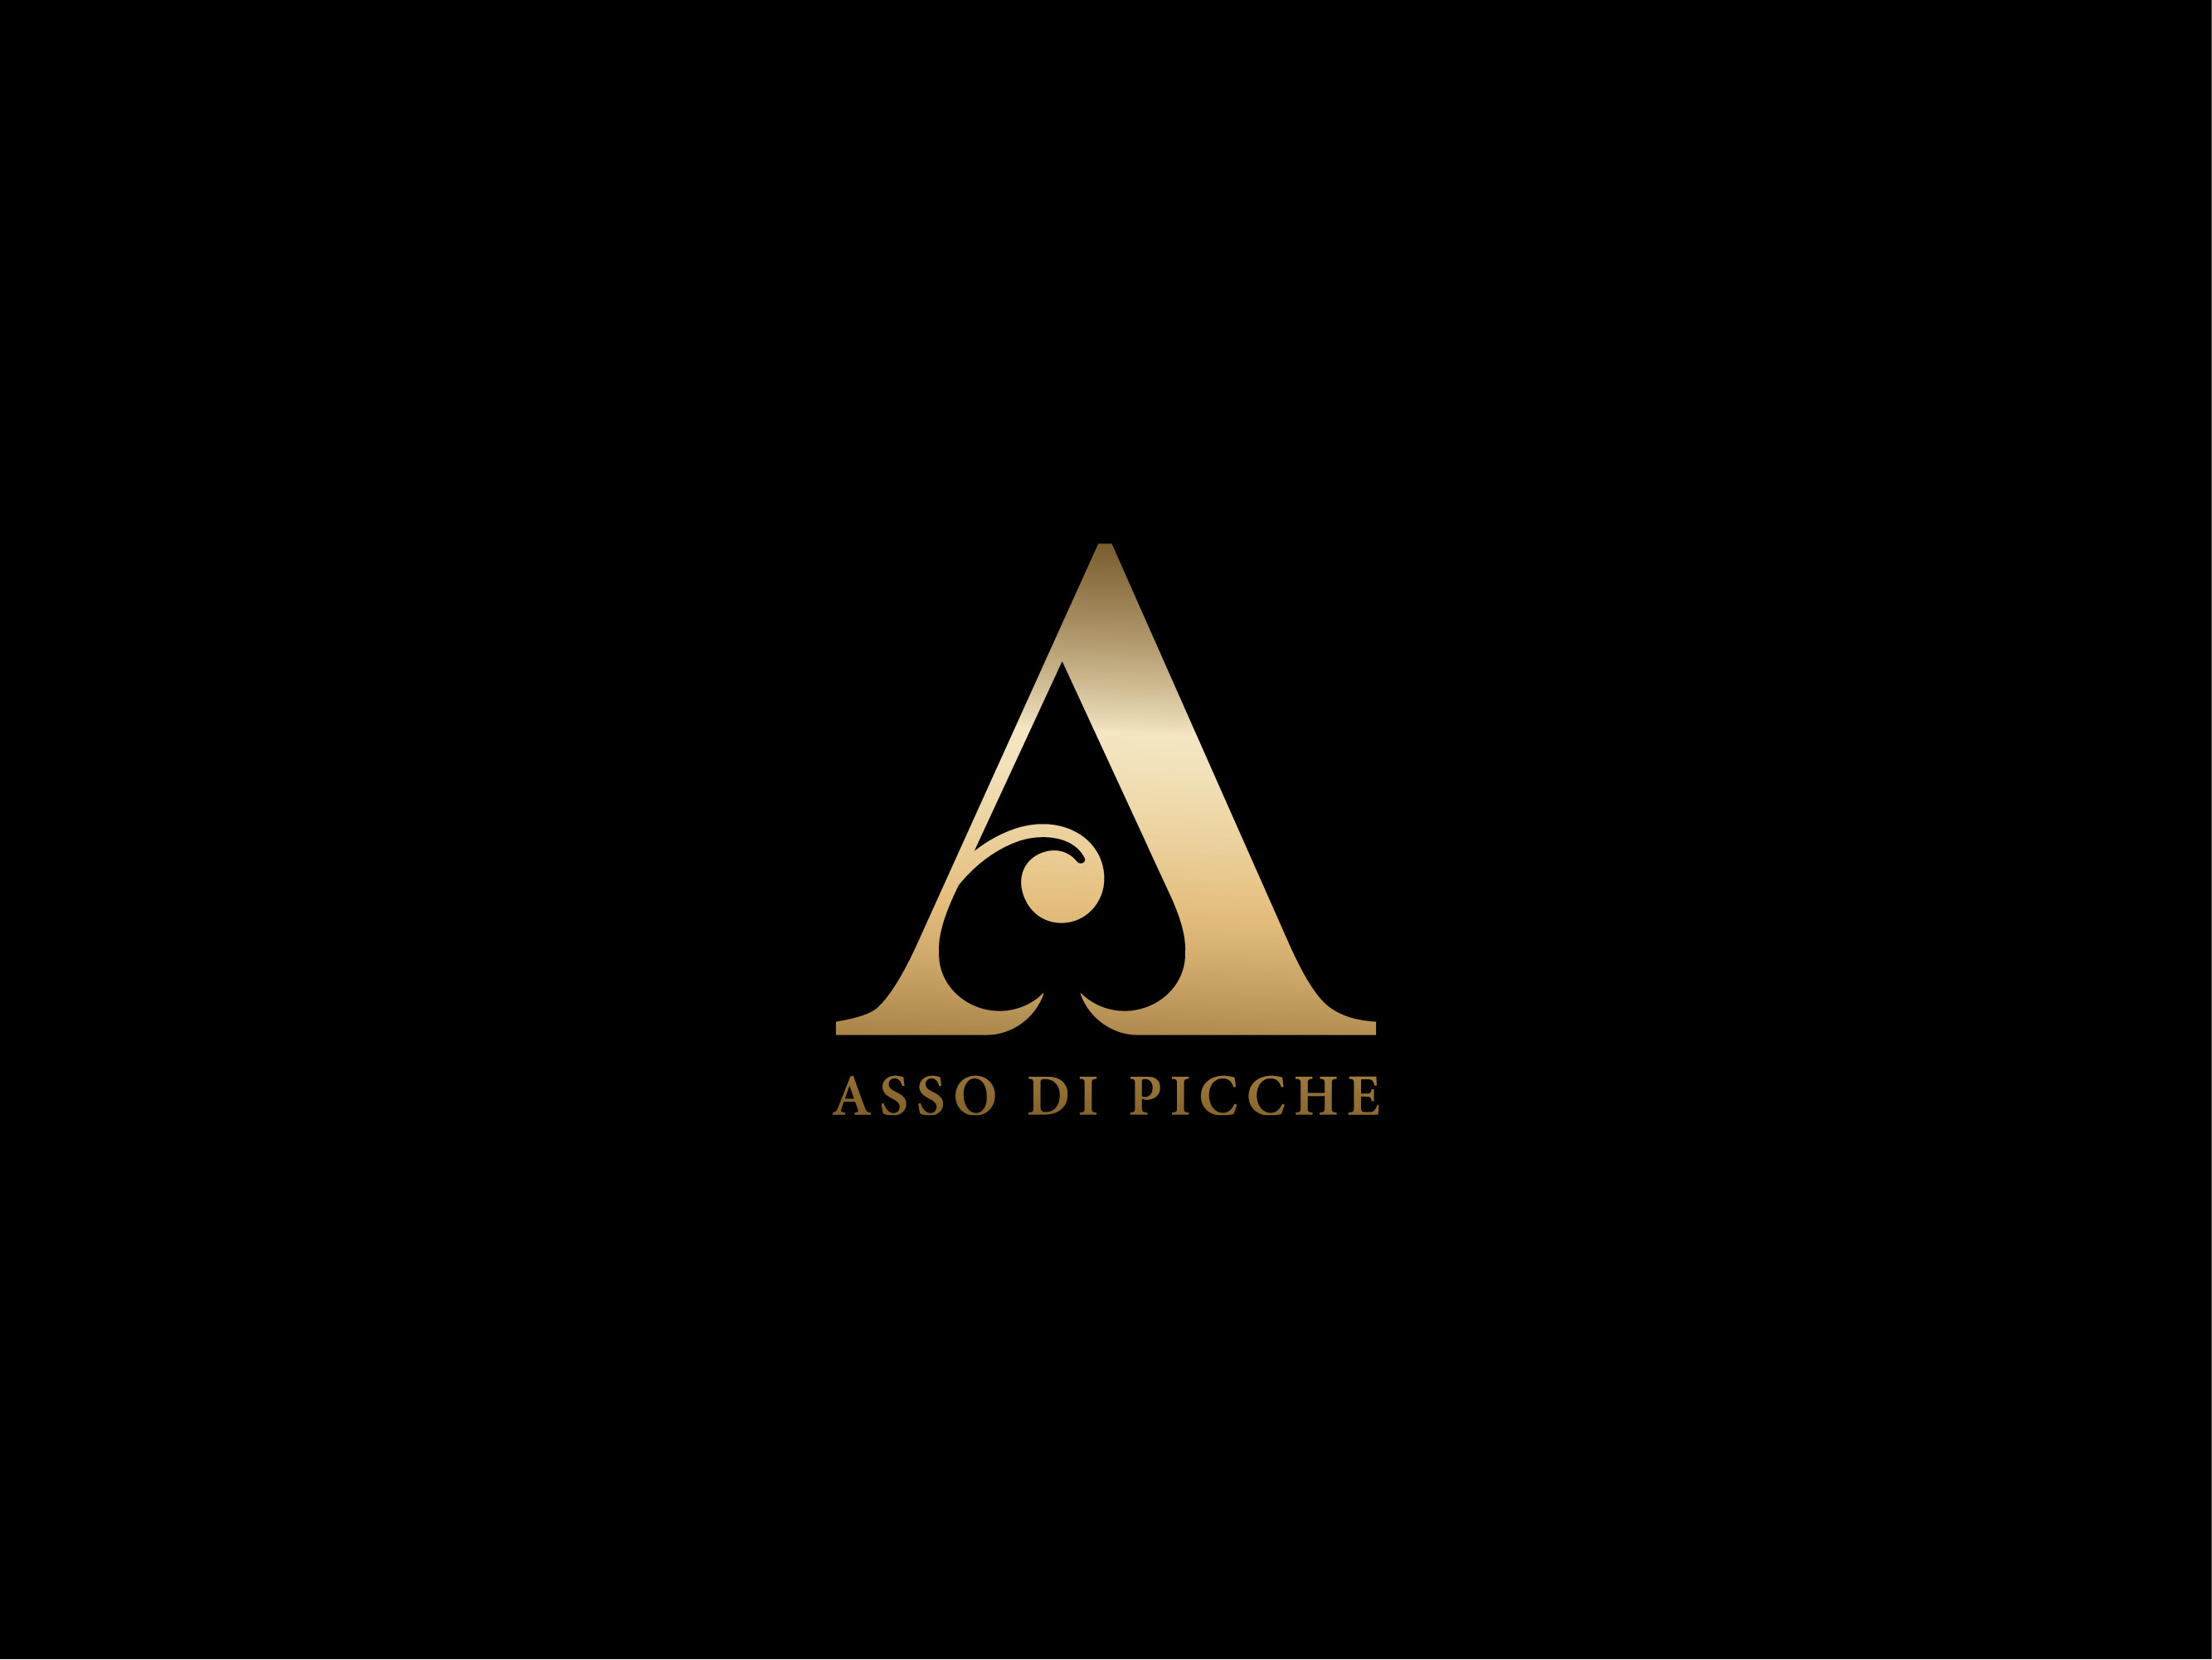 Asso Di Picche Italian luxury brand logo design